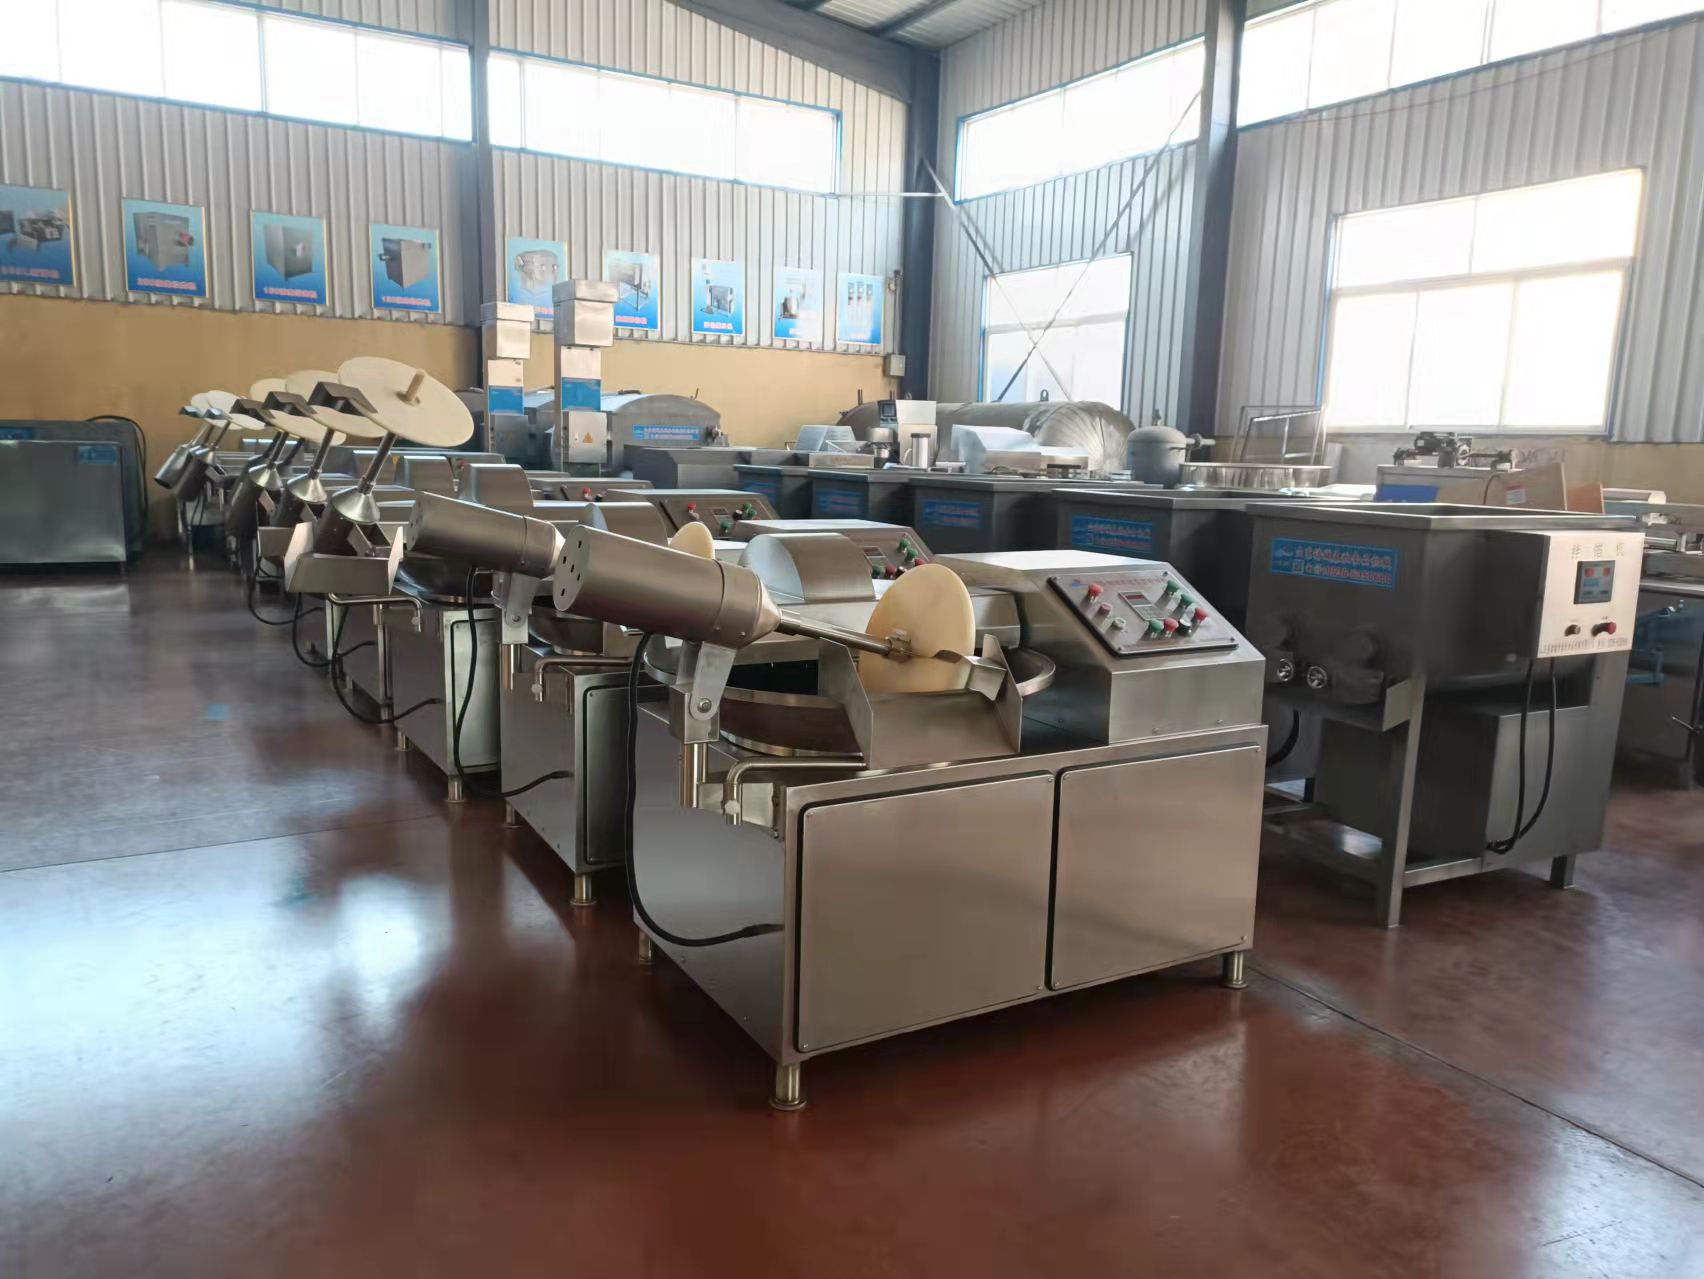 监利包子馅料工厂设备13863646772生产包子馅料工厂用的机器